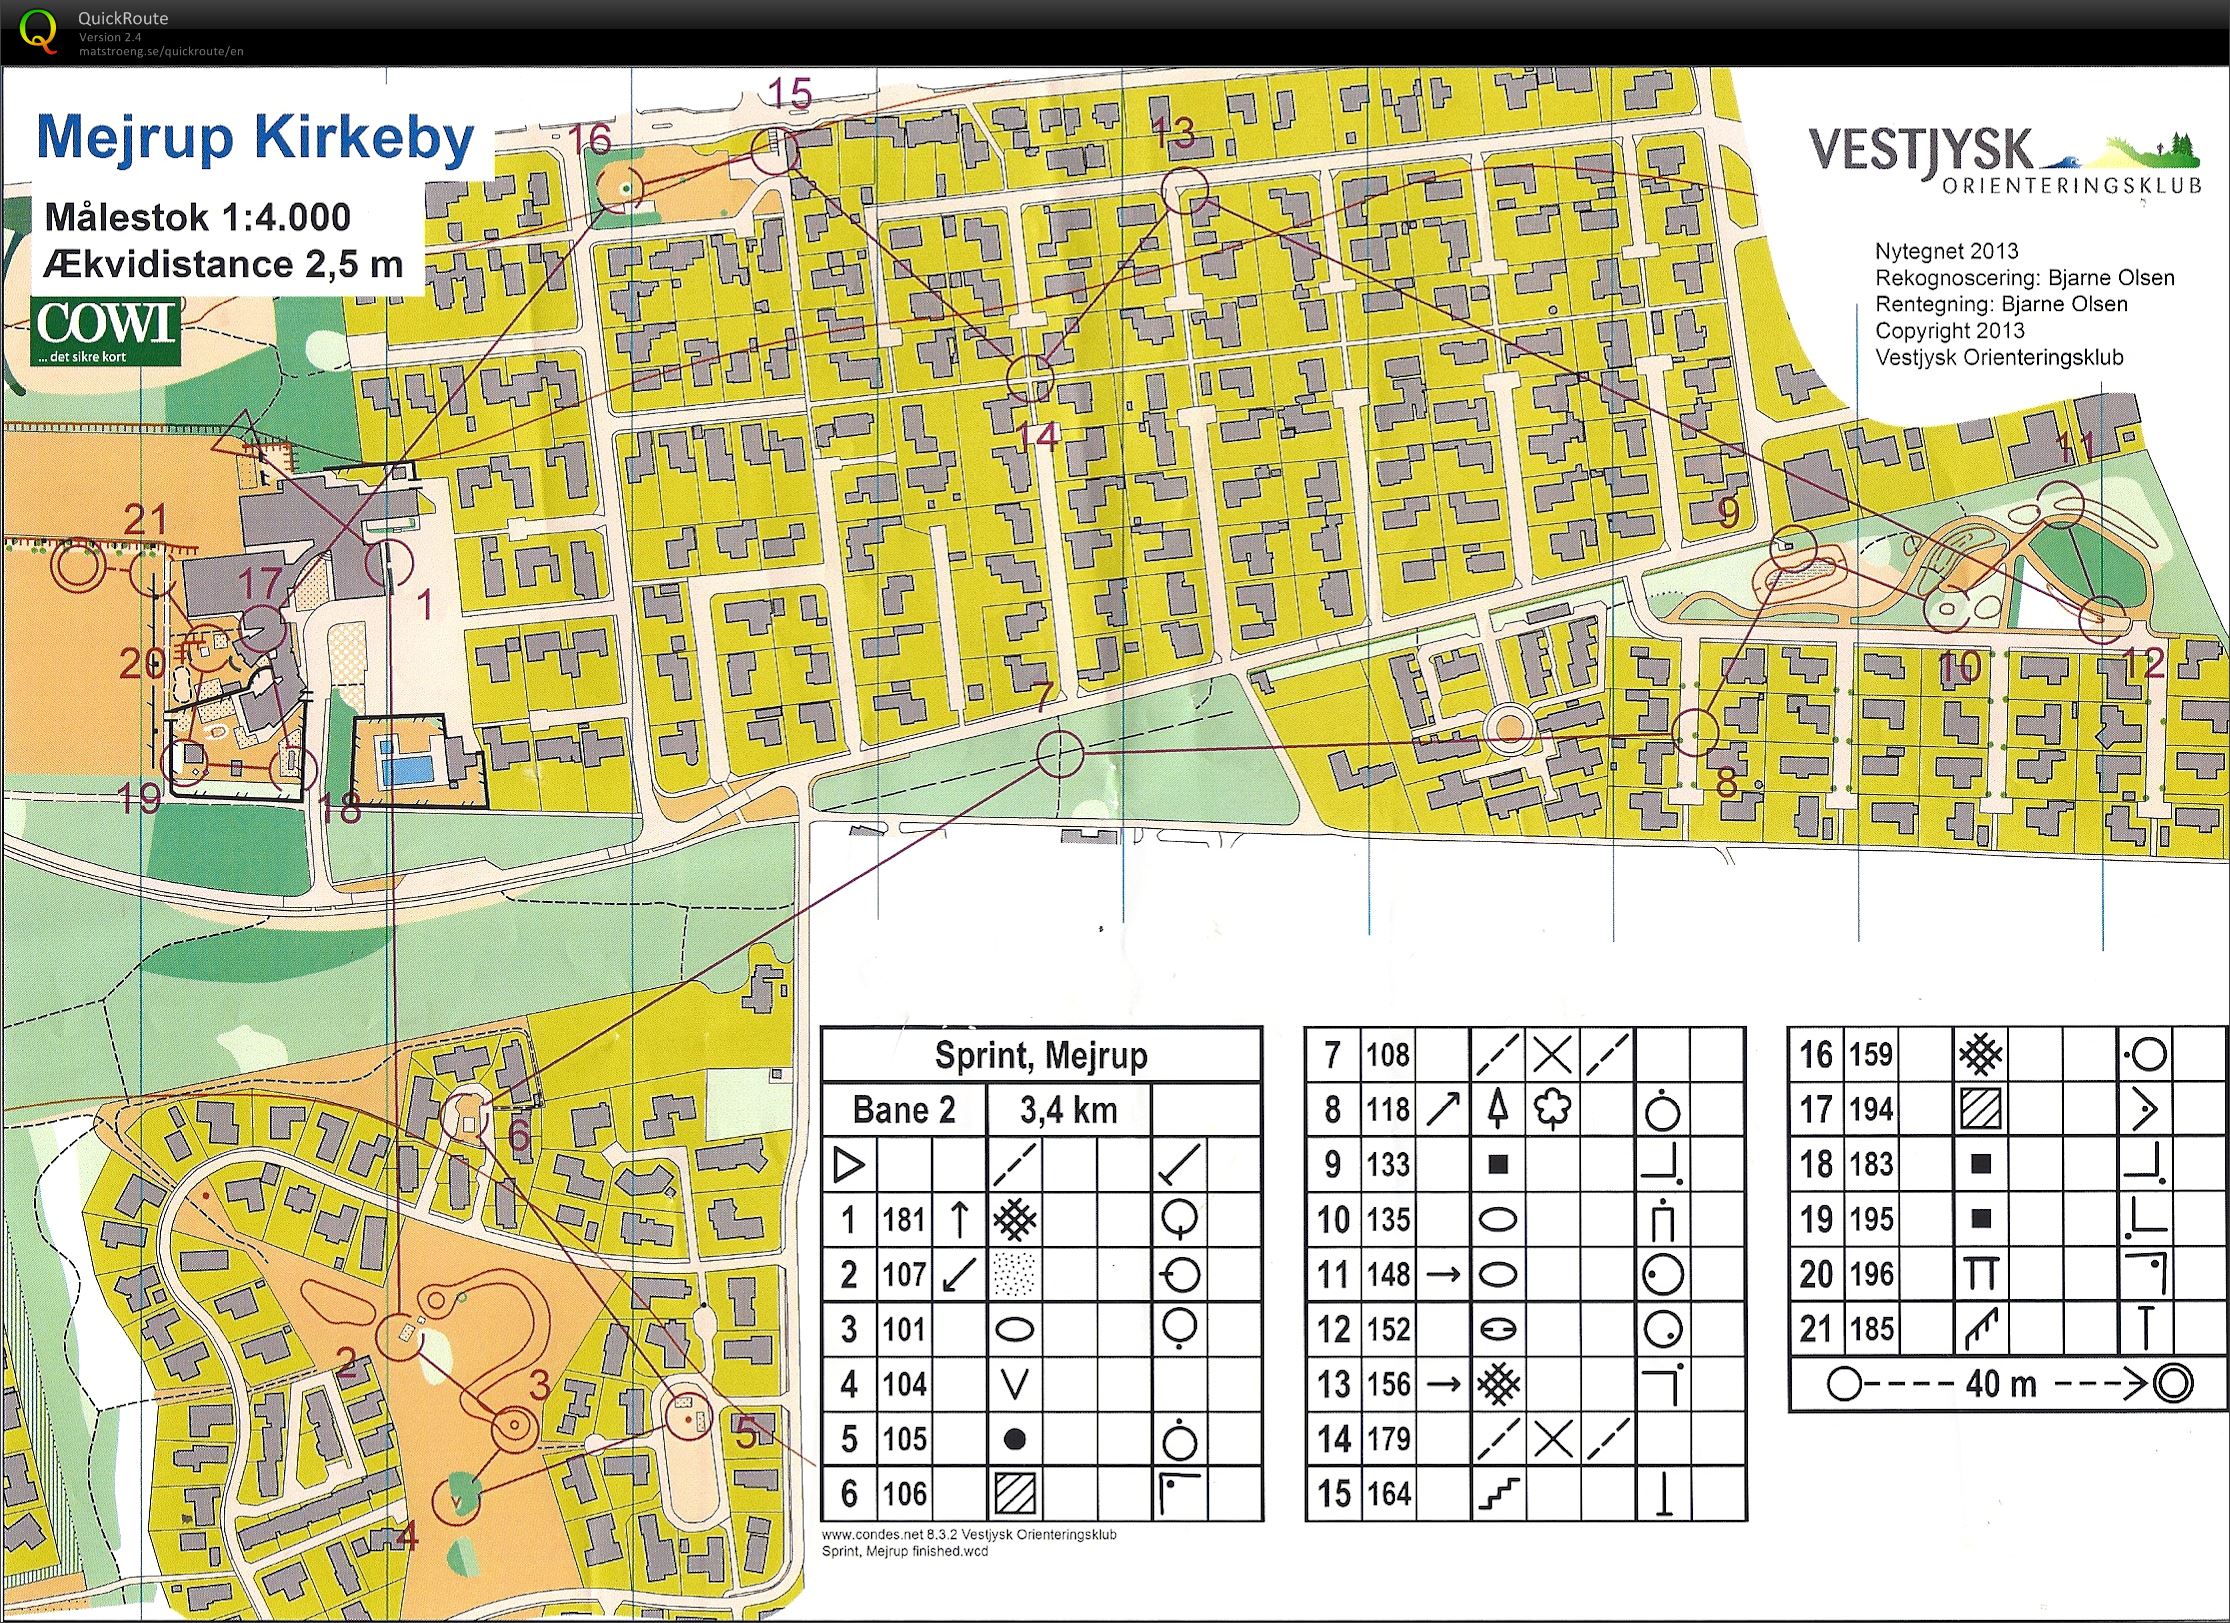 Vestjysk 2 dages 2013 sprint (28-06-2013)